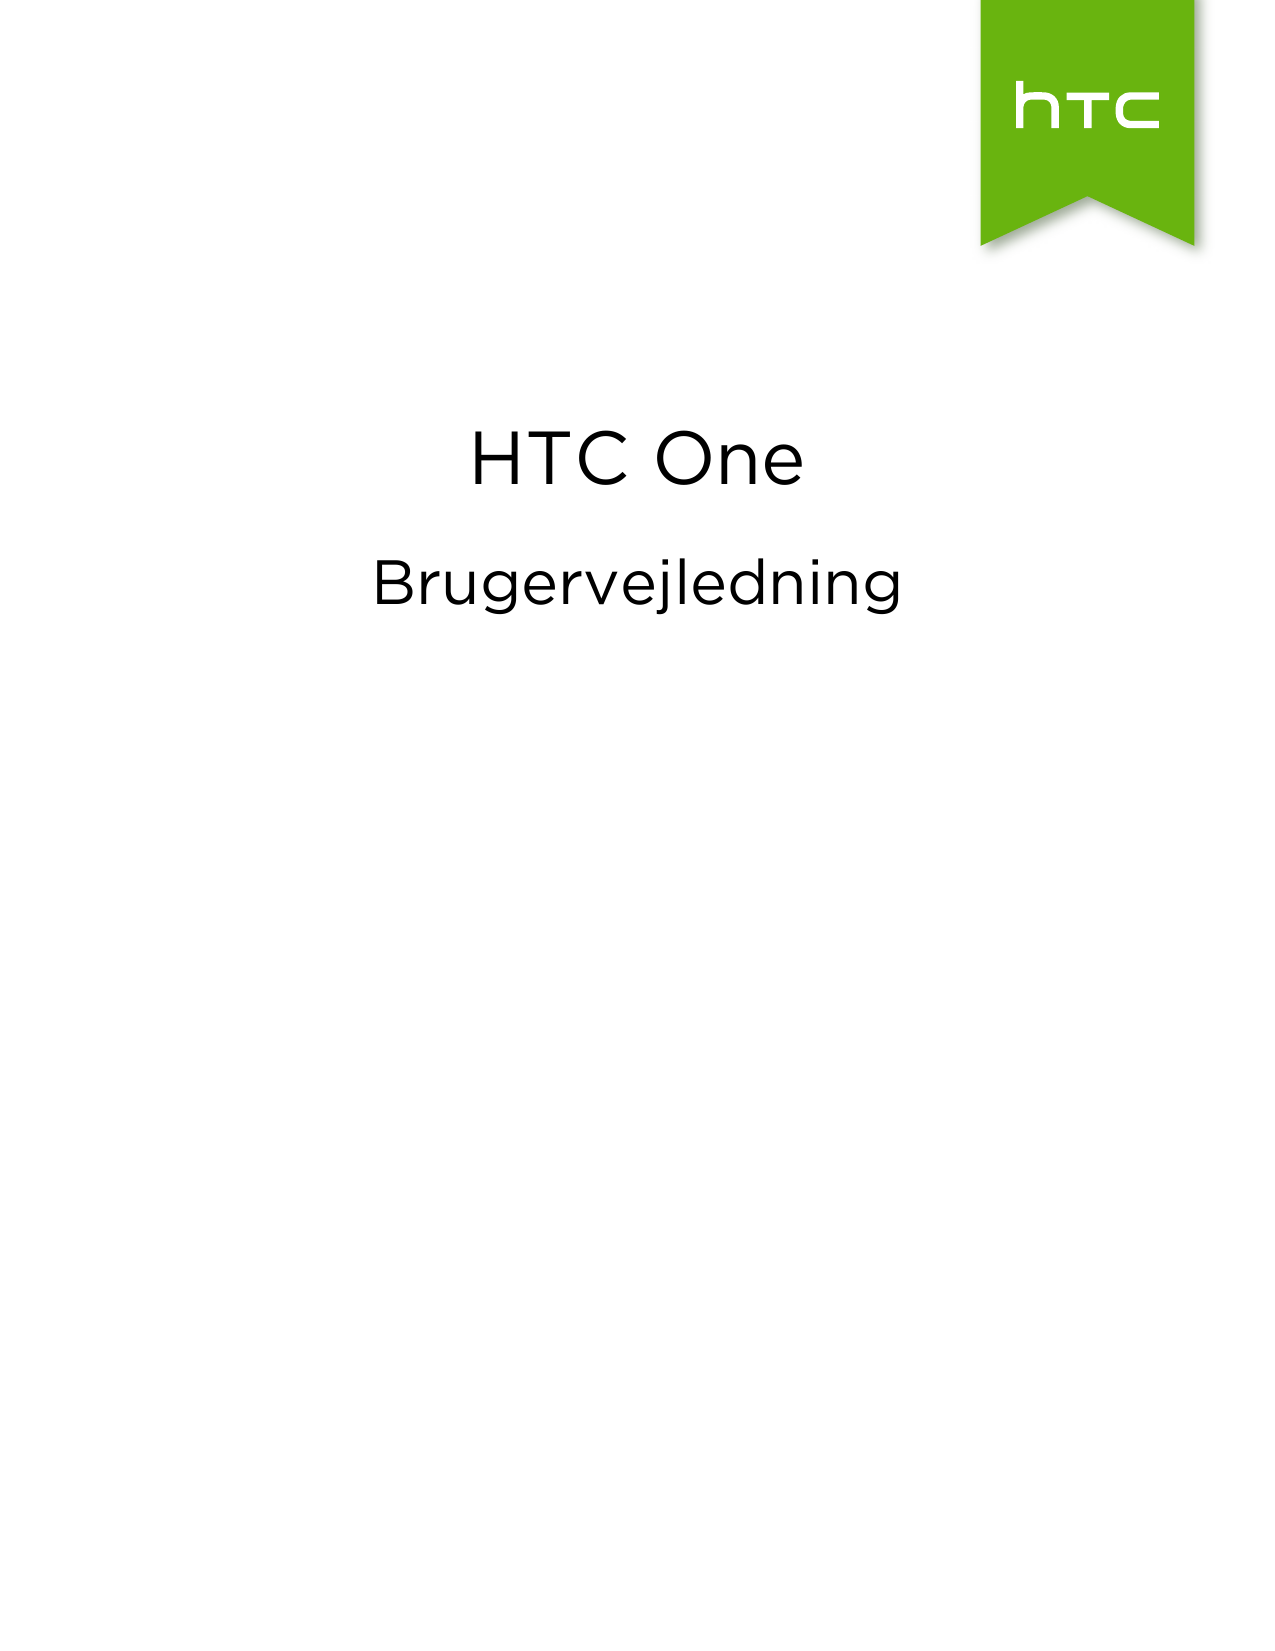 HTC OneBrugervejledning